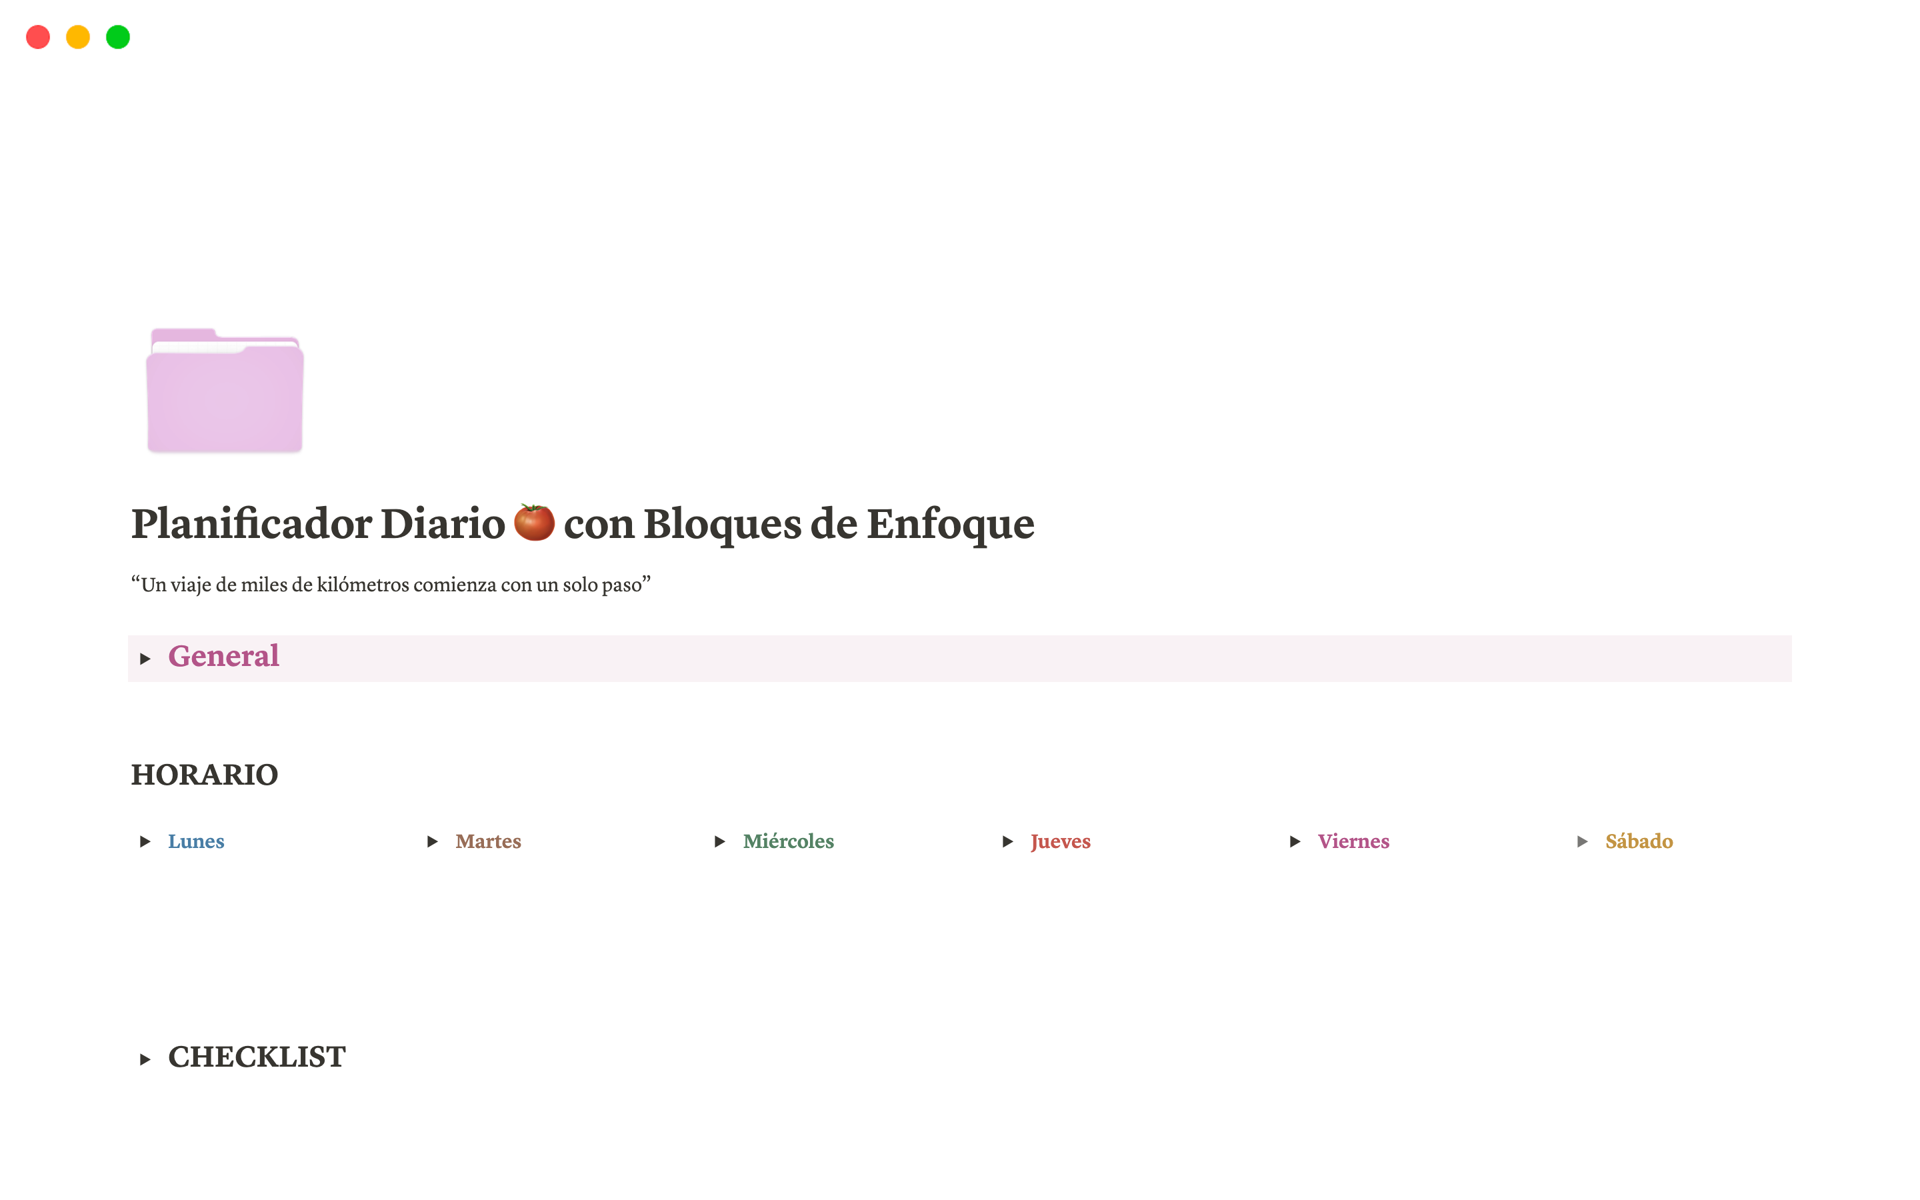 Eine Vorlagenvorschau für Planificador Diario 🍅 con Bloques de Enfoque